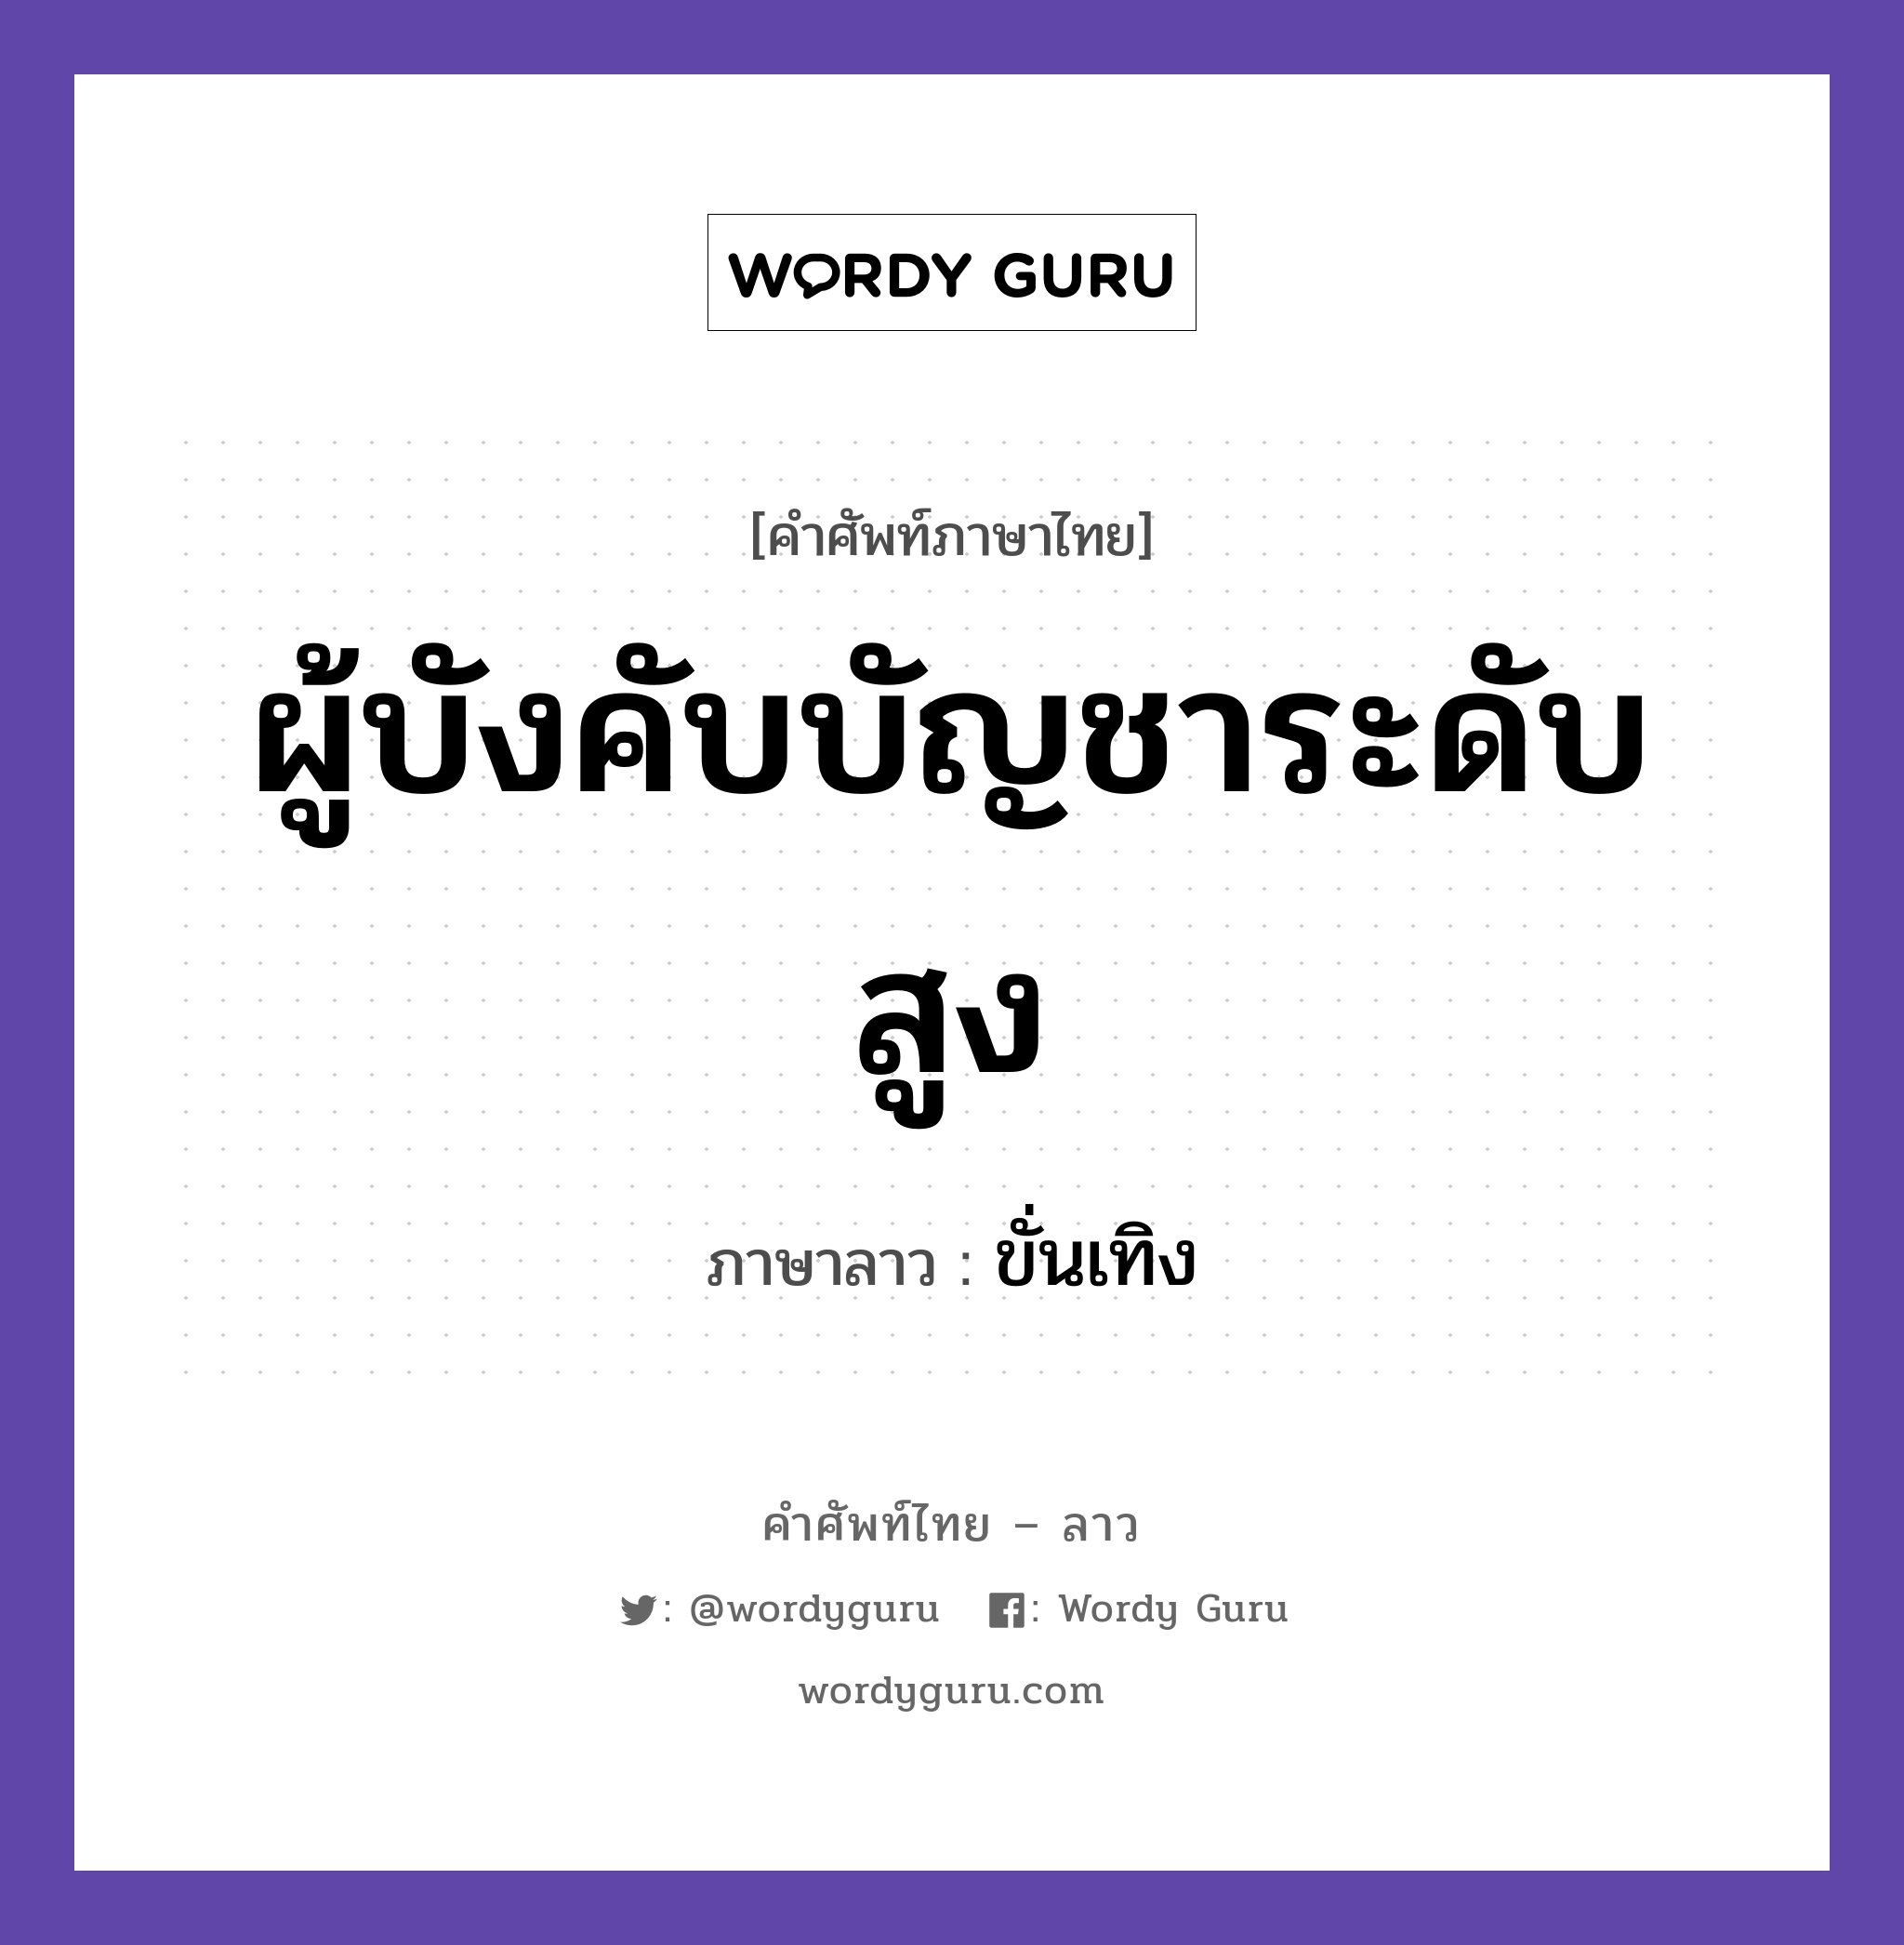 ขั่นเทิง ภาษาไทย?, คำศัพท์ภาษาไทย - ลาว ขั่นเทิง ภาษาลาว ผู้บังคับบัญชาระดับสูง หมวด คำที่ใช้ในการประชุมทางวิชาการ หมวด คำที่ใช้ในการประชุมทางวิชาการ